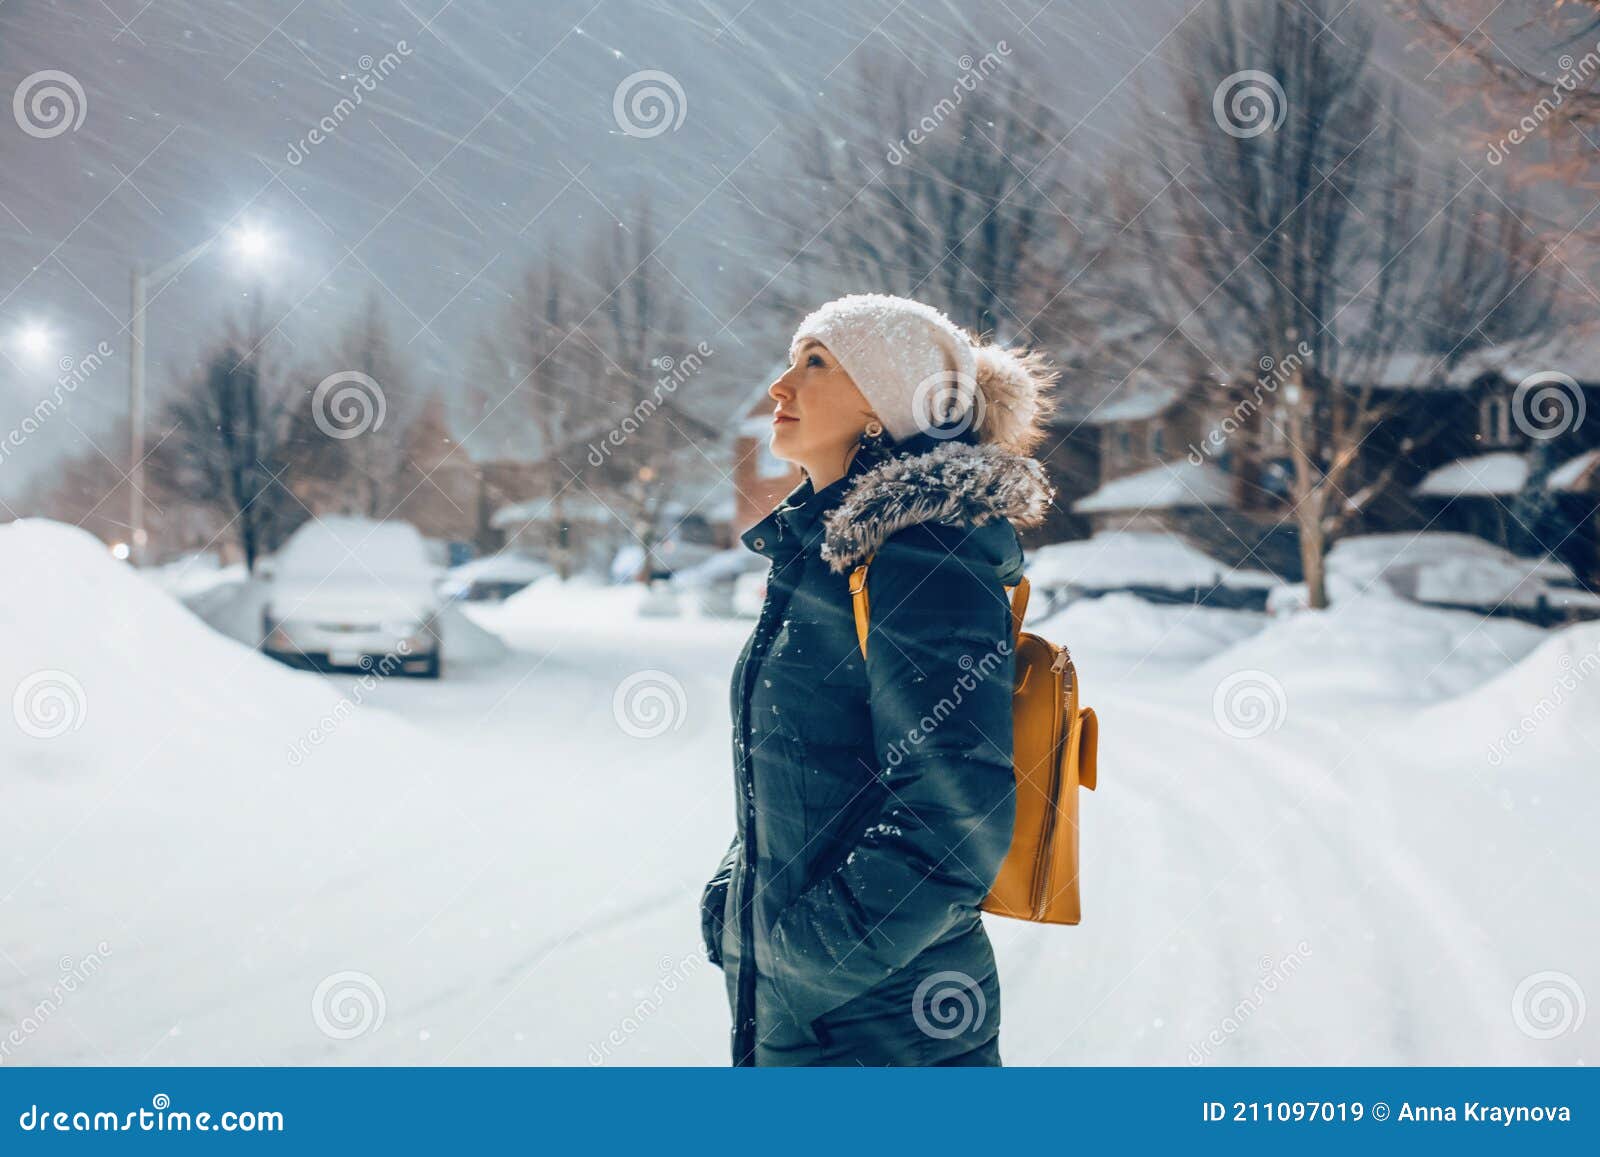 https://thumbs.dreamstime.com/z/mujer-en-chaqueta-azul-ropa-de-invierno-y-sombrero-caminando-al-aire-libre-bajo-la-nieve-pie-luz-calle-mirando-que-cae-noche-211097019.jpg